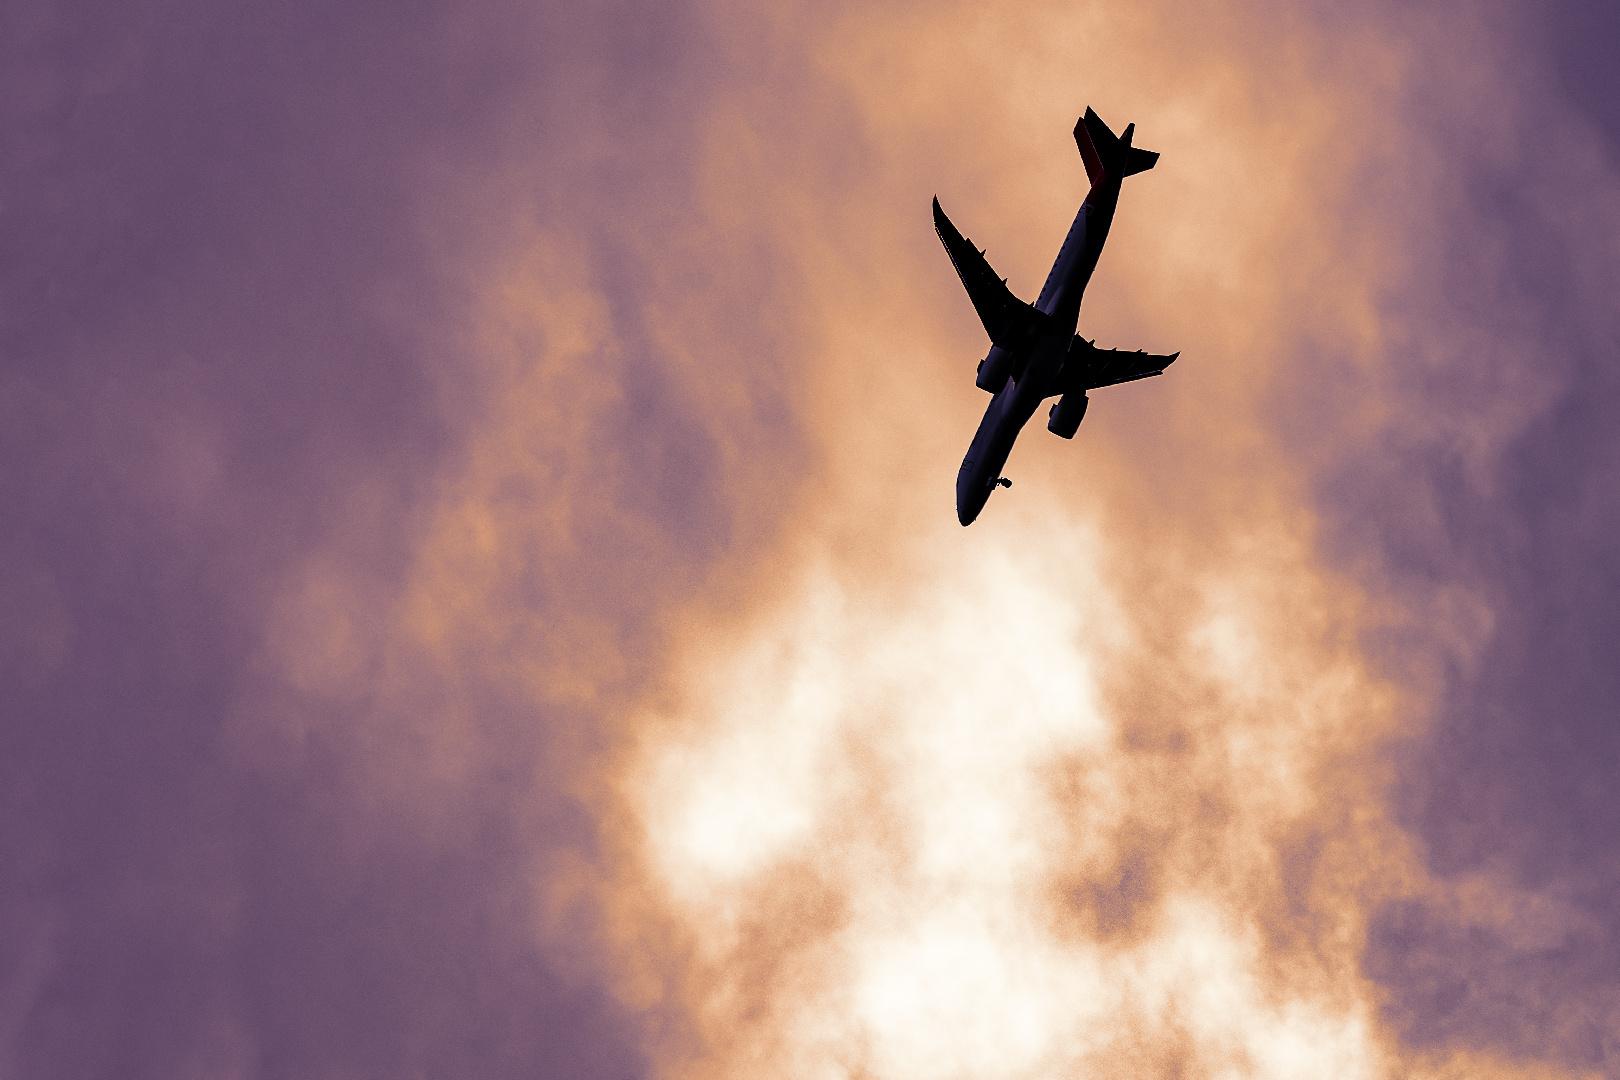 самолет в небе с солнечными лучами, самолет и голубое небо, Hd фотография  фото, облако фон картинки и Фото для бесплатной загрузки